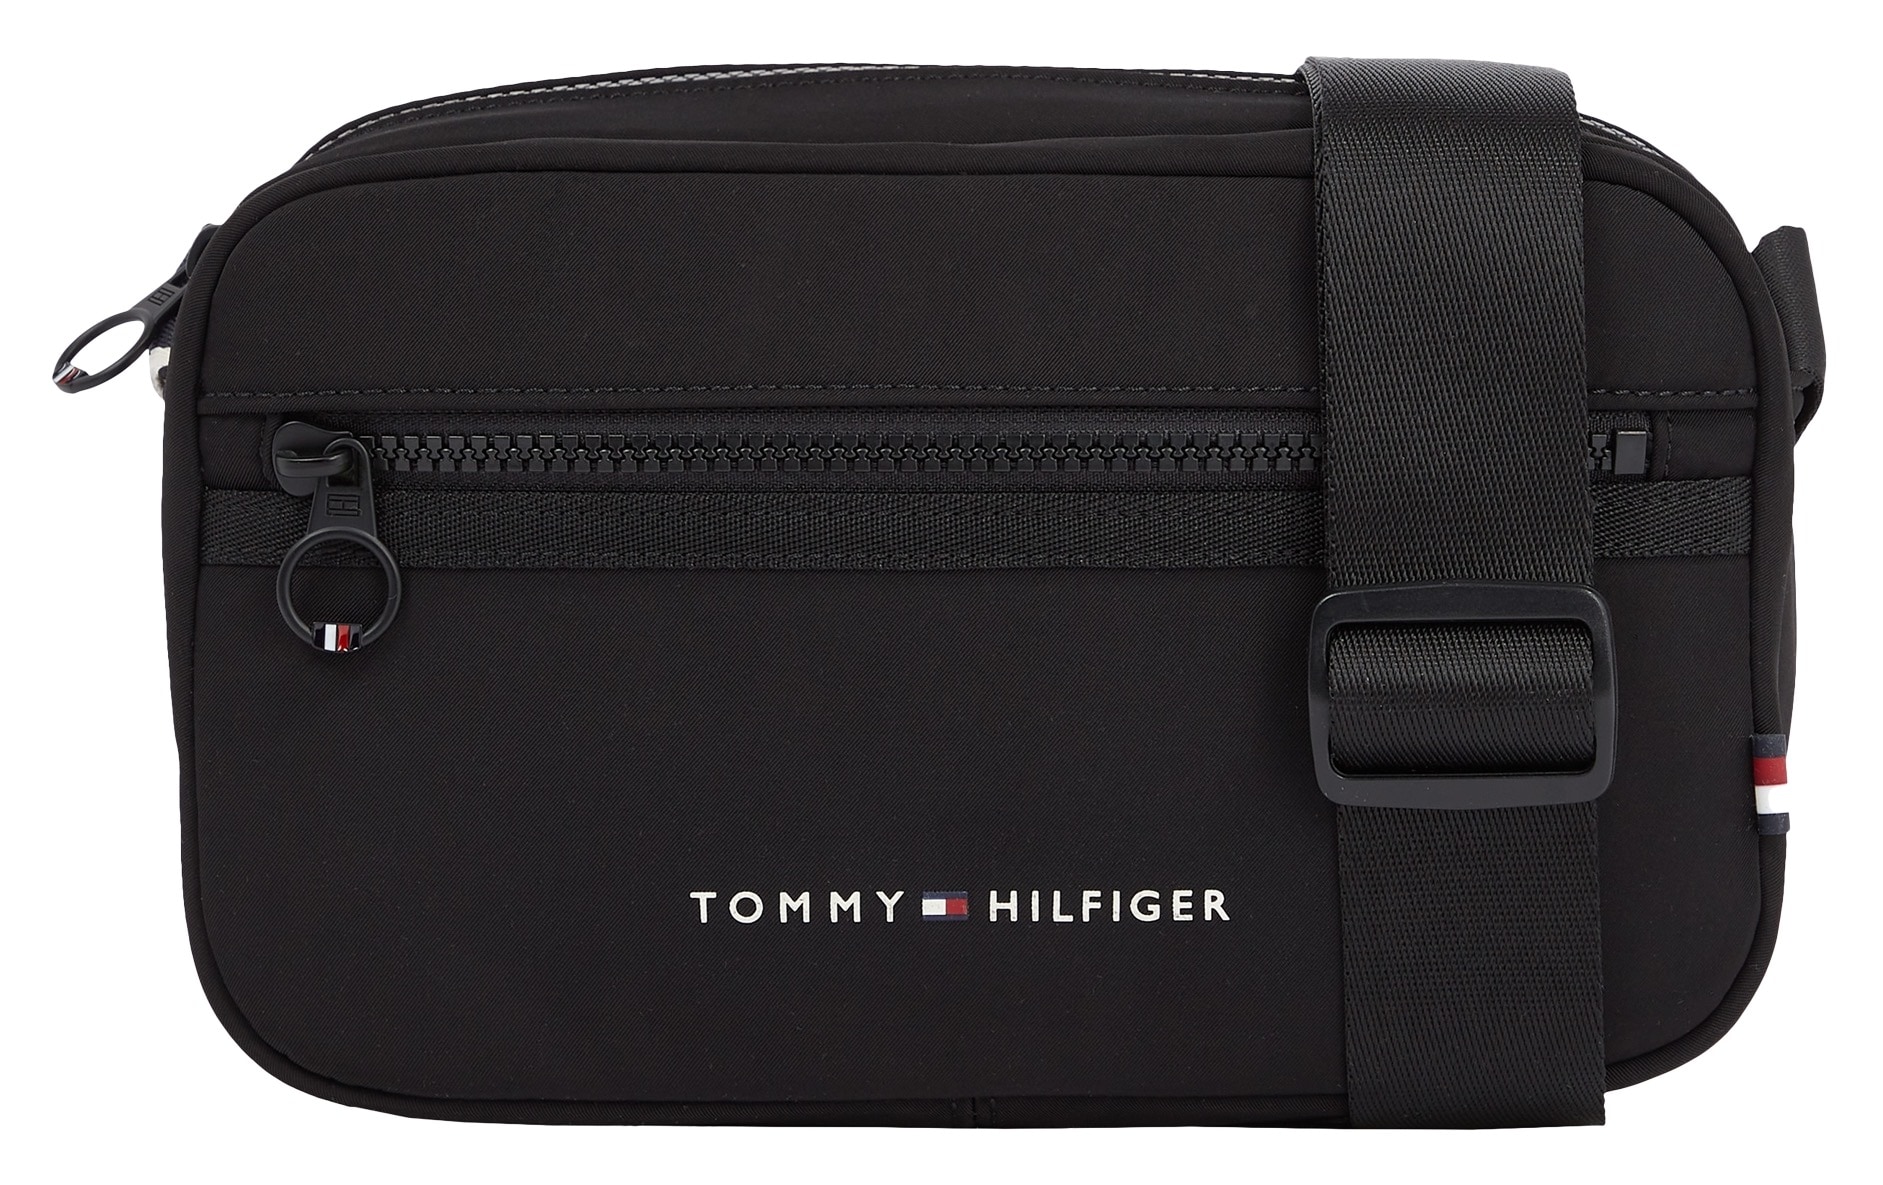 Bag schlichten Hilfiger online REPORTER«, Jelmoli-Versand SKYLINE shoppen Design EW Mini »TH im Tommy |